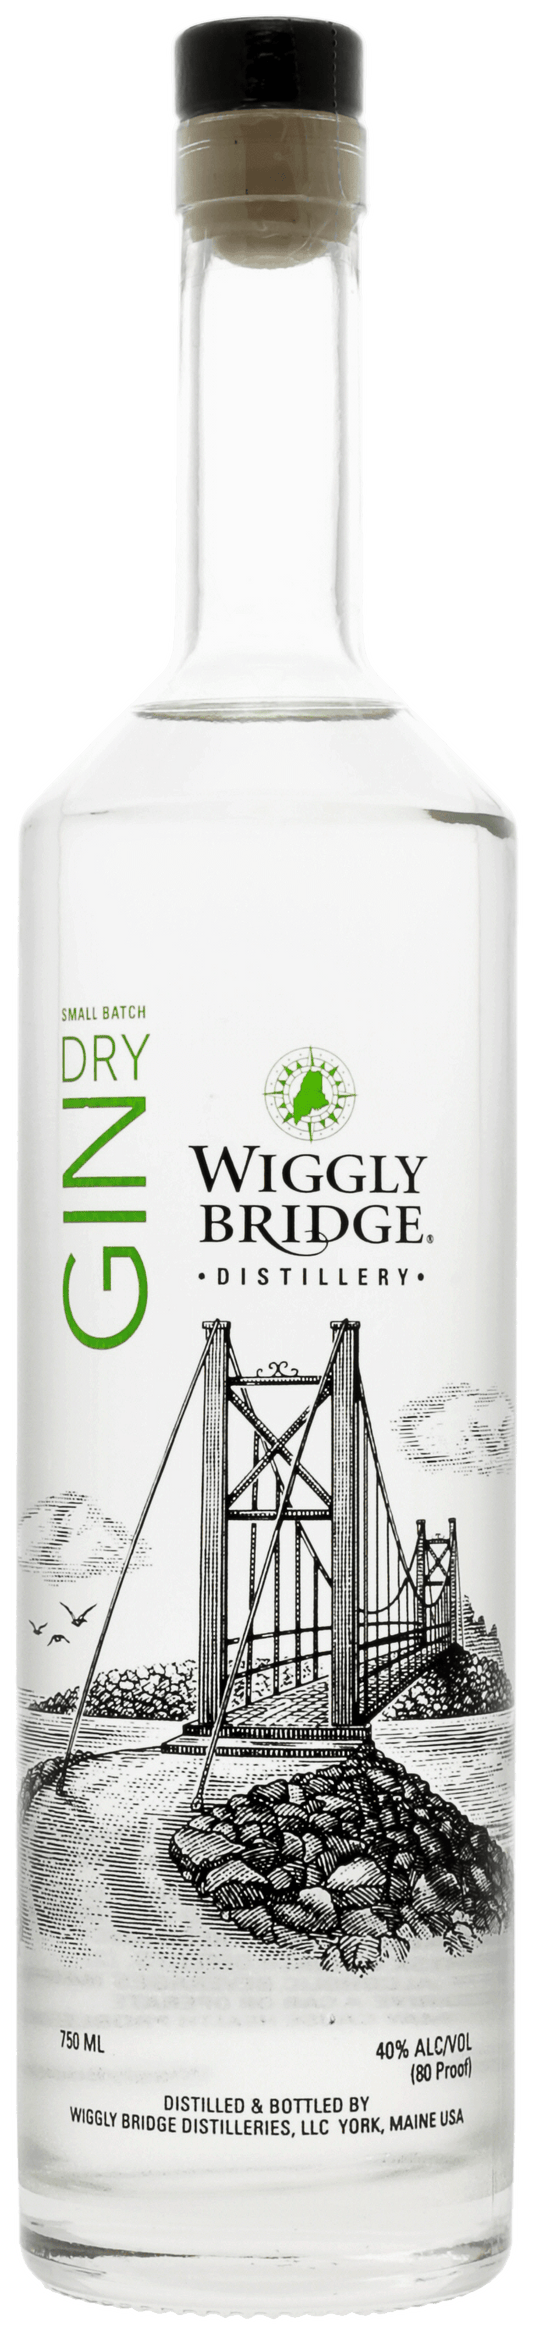 Wiggly Bridge Gin